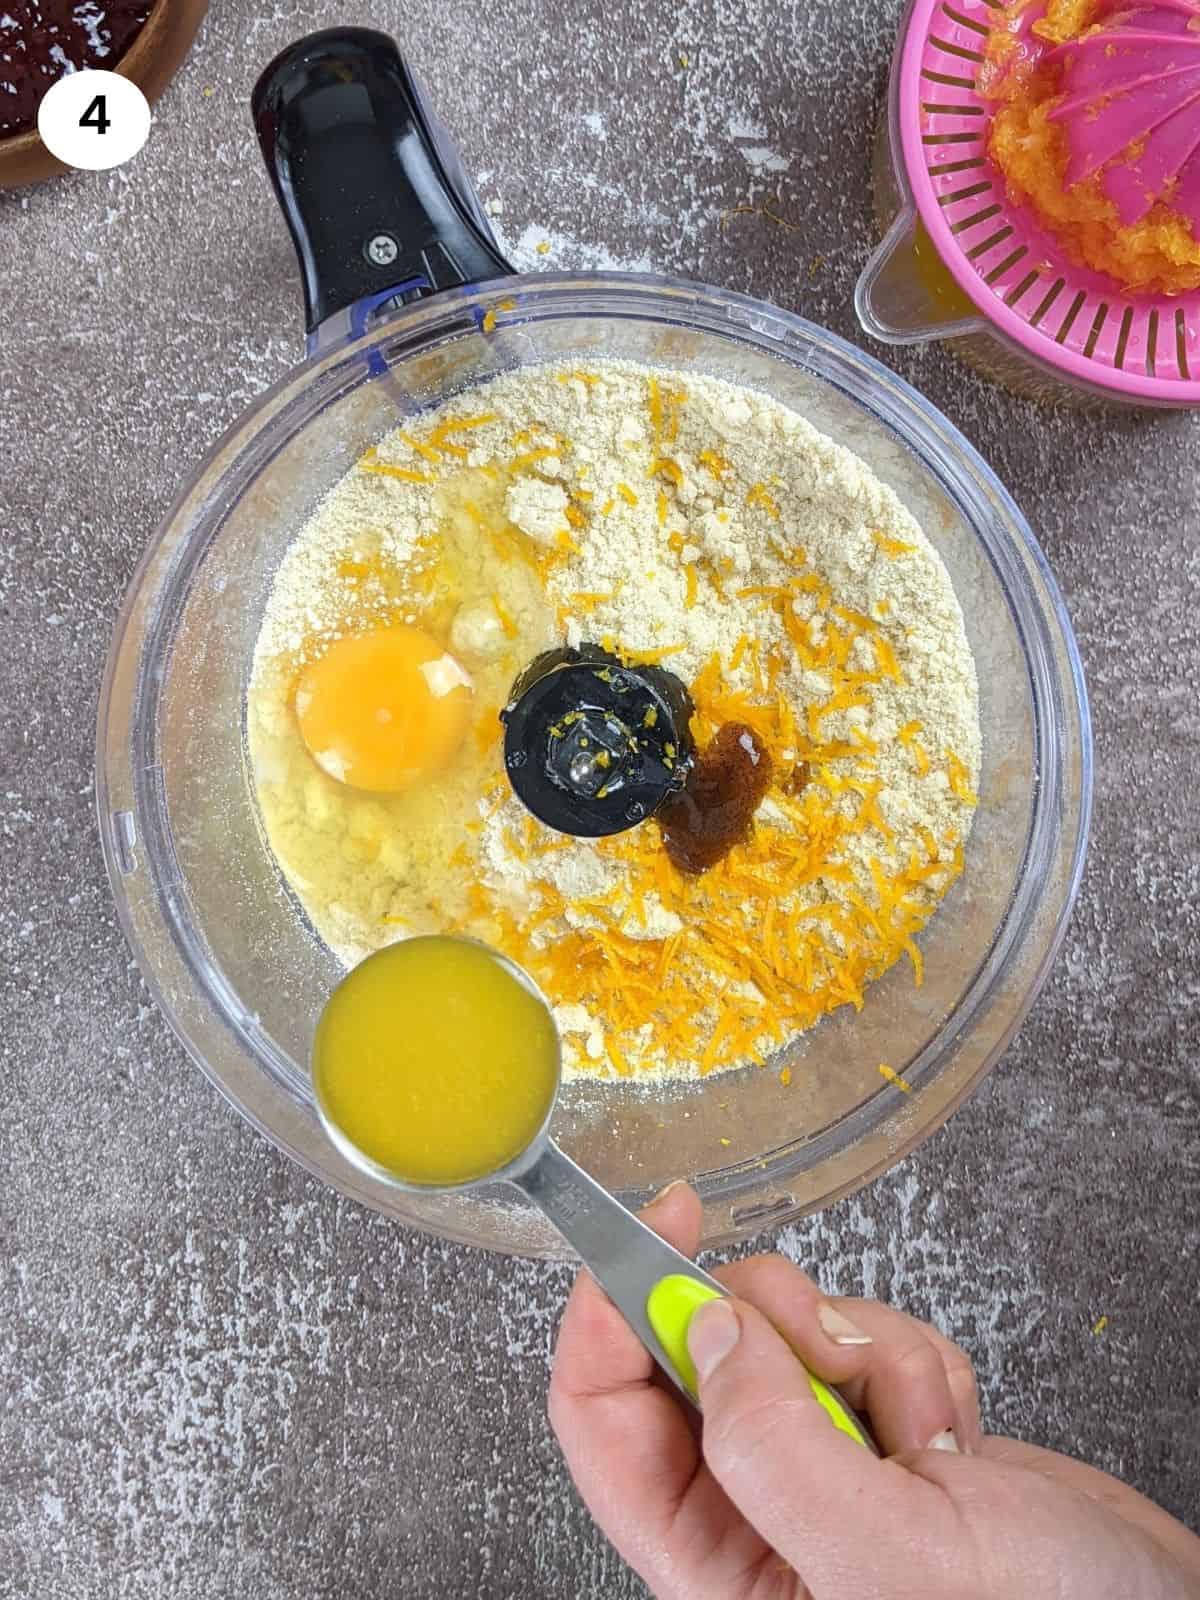 Adding orange juice to the mixture.